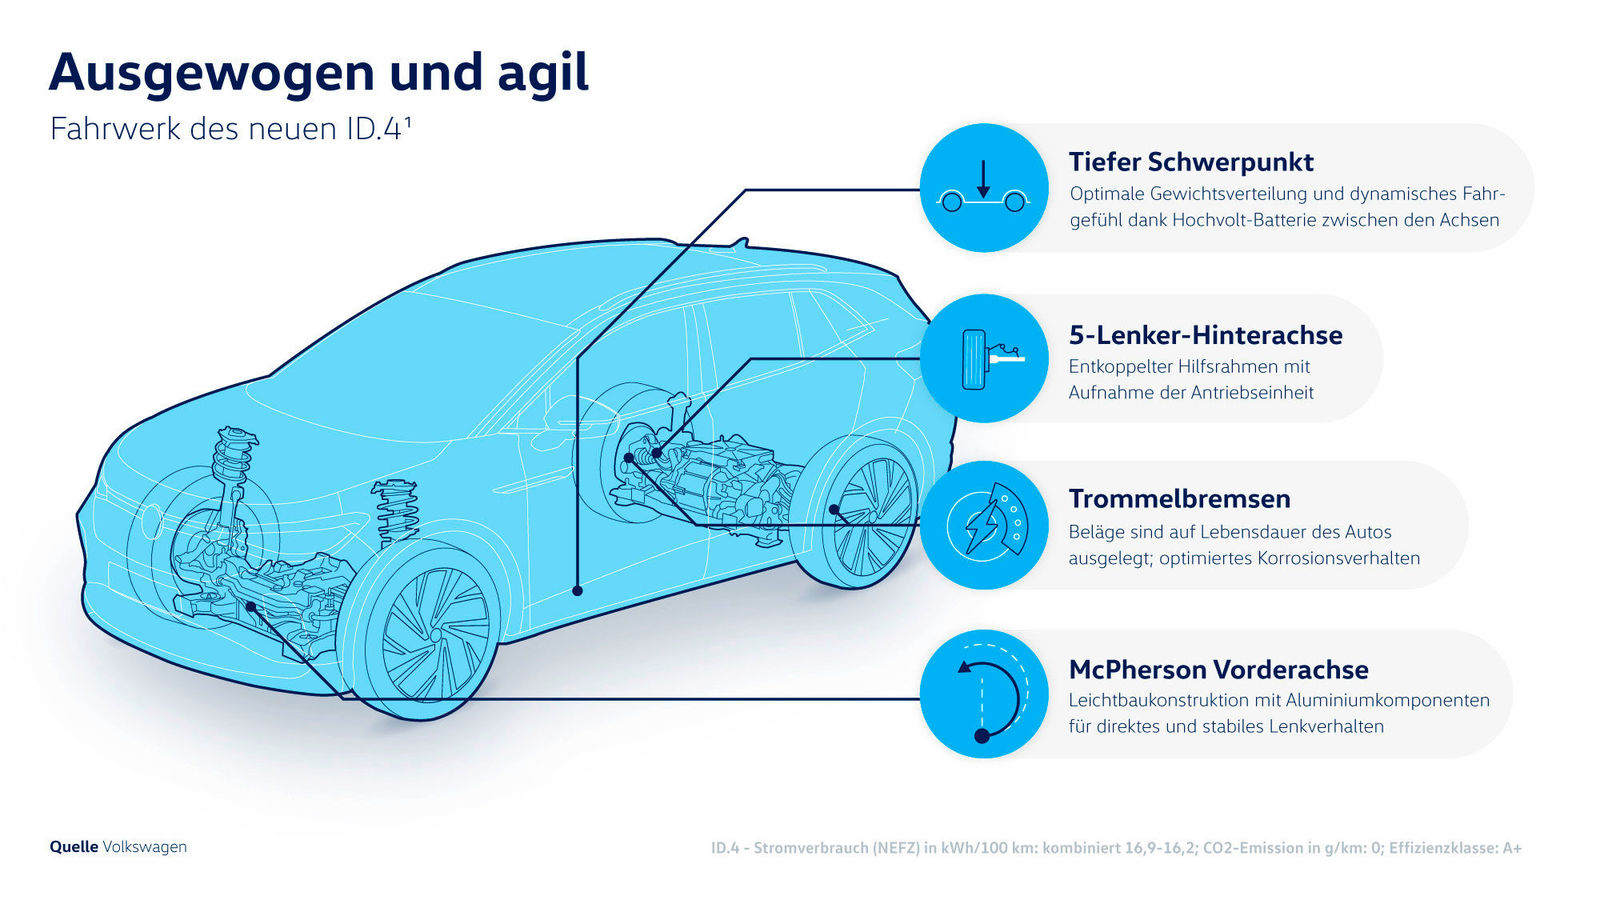 Fahrwerk des neuen Volkswagen ID.4